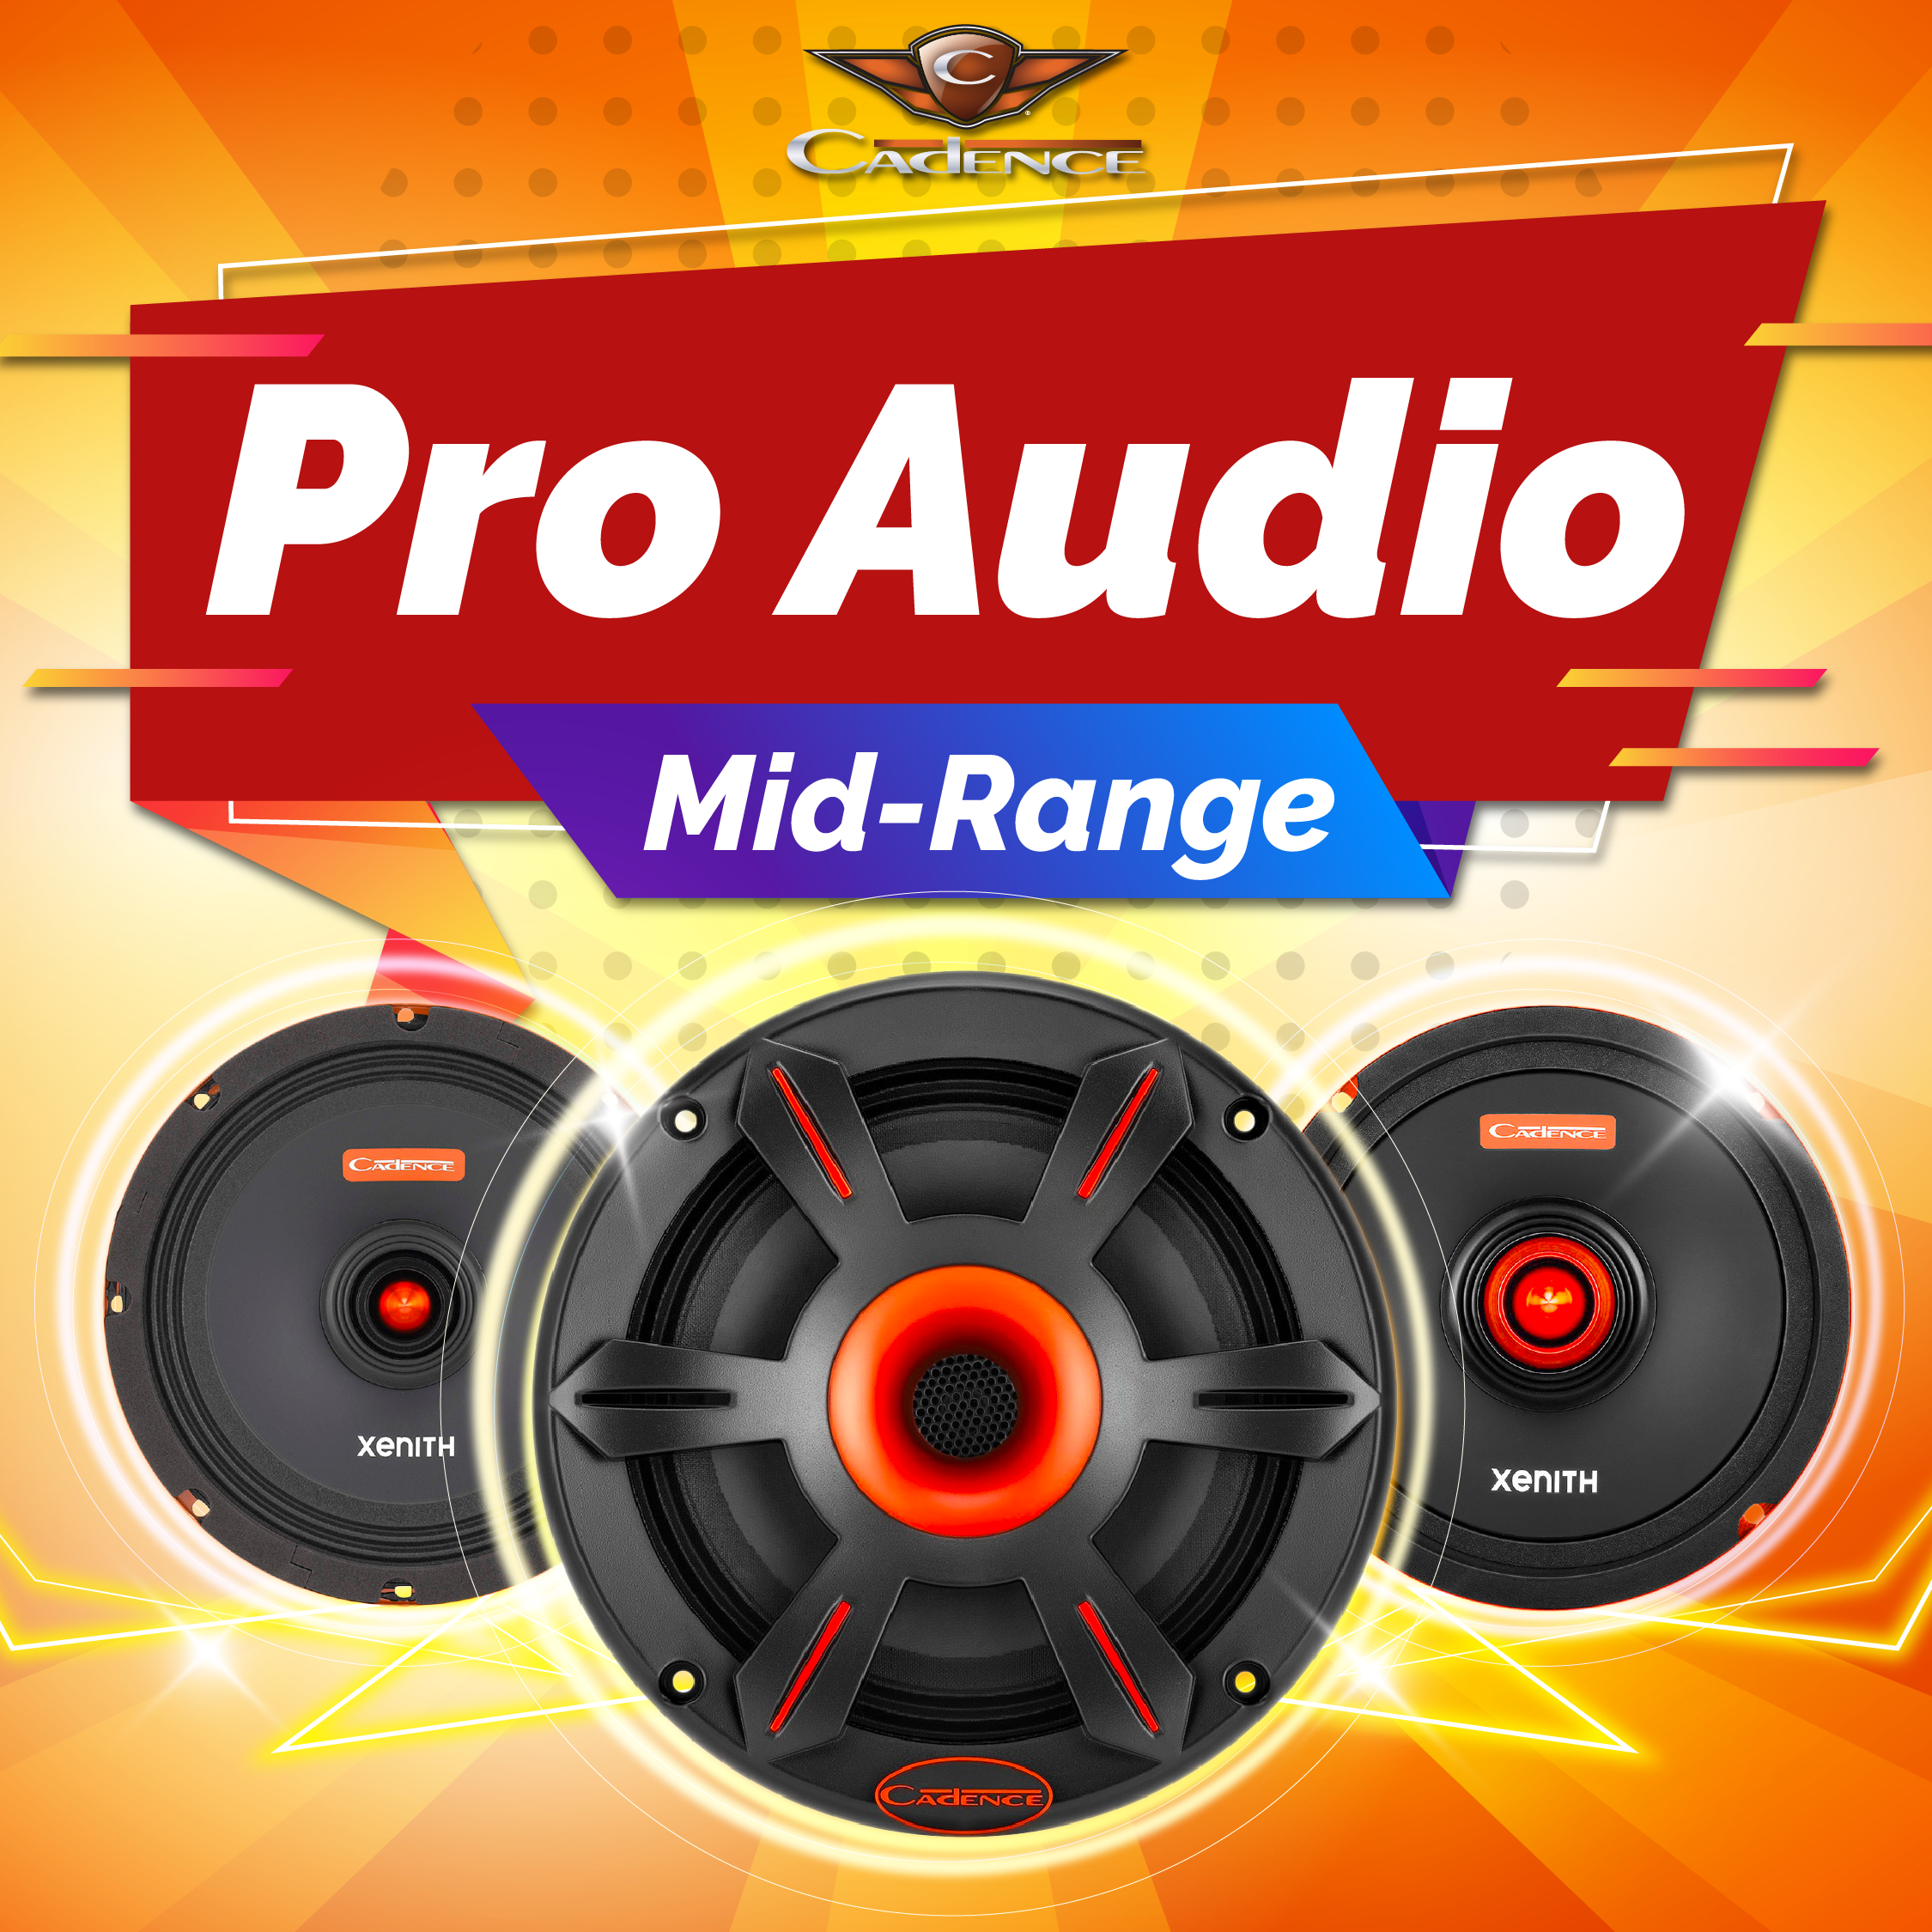 Pro Audio Midrange